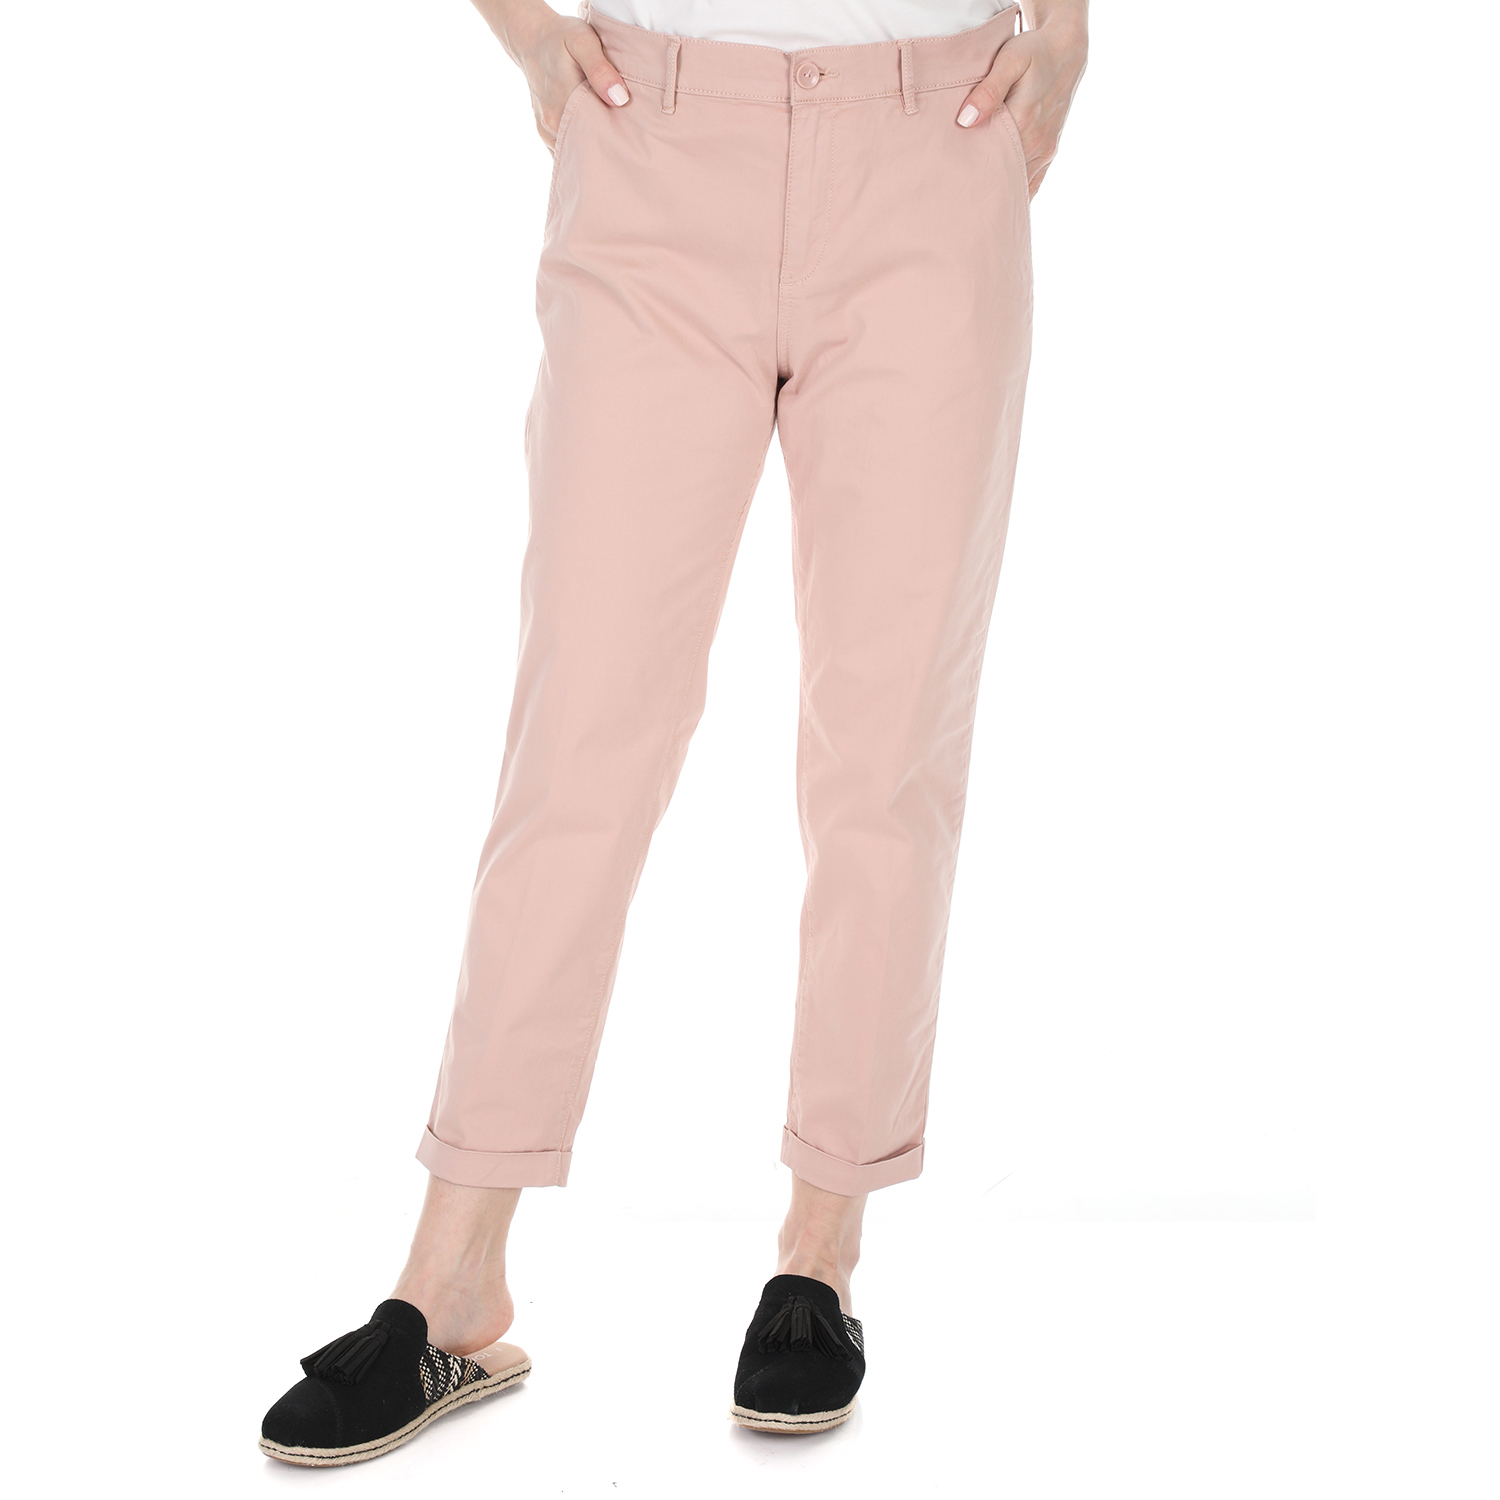 Γυναικεία/Ρούχα/Παντελόνια/Chinos GAS - Γυναικείο chino παντελόνι GAS ALONI JINSY ροζ